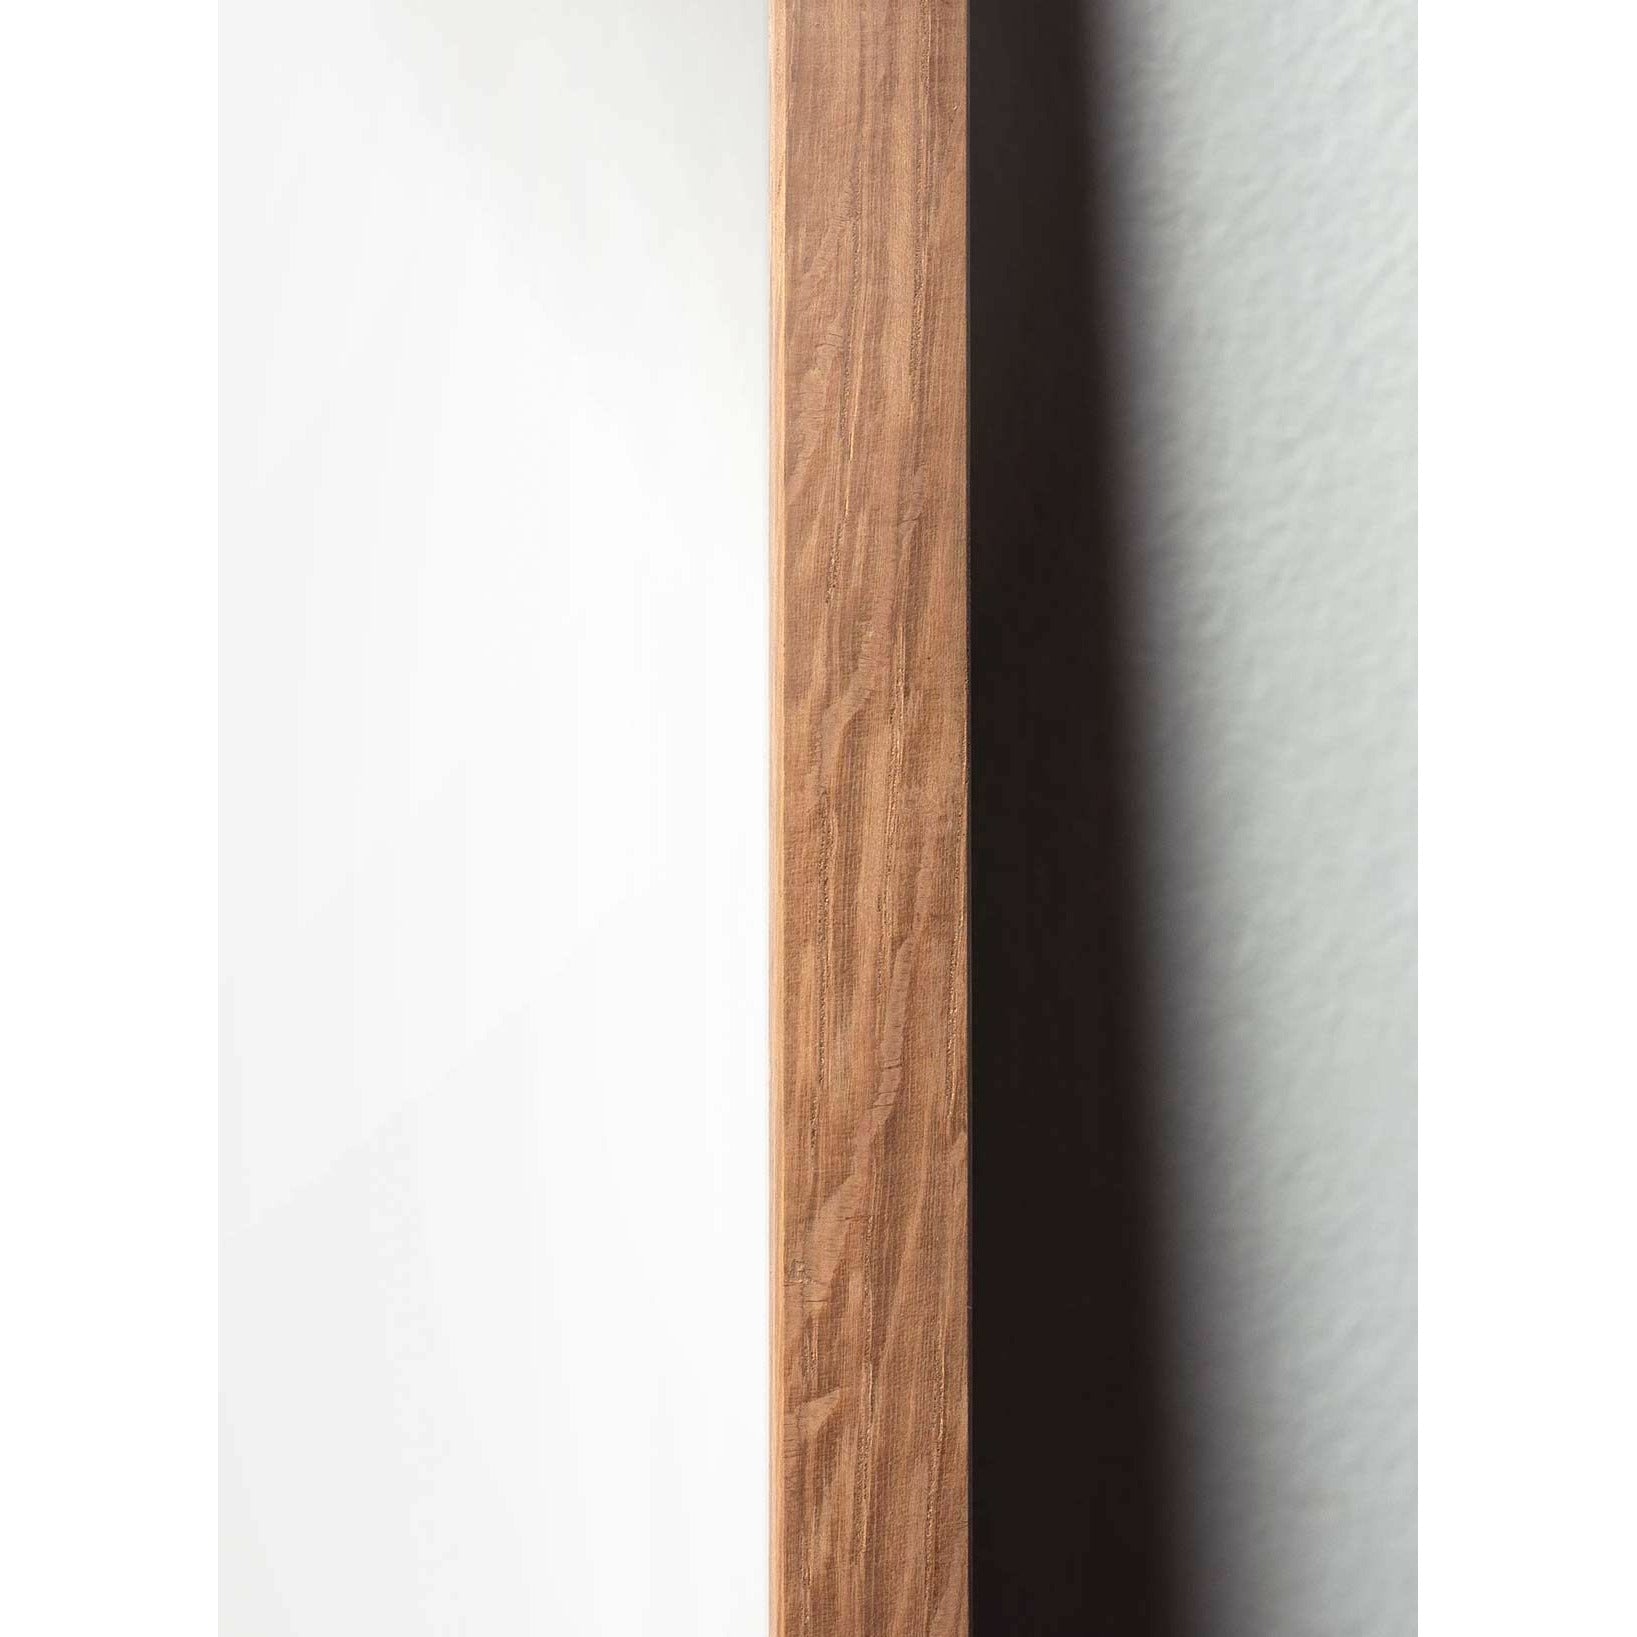 Poster classico di Pelikan da un'idea, cornice in legno chiaro 70x100 cm, sfondo nero